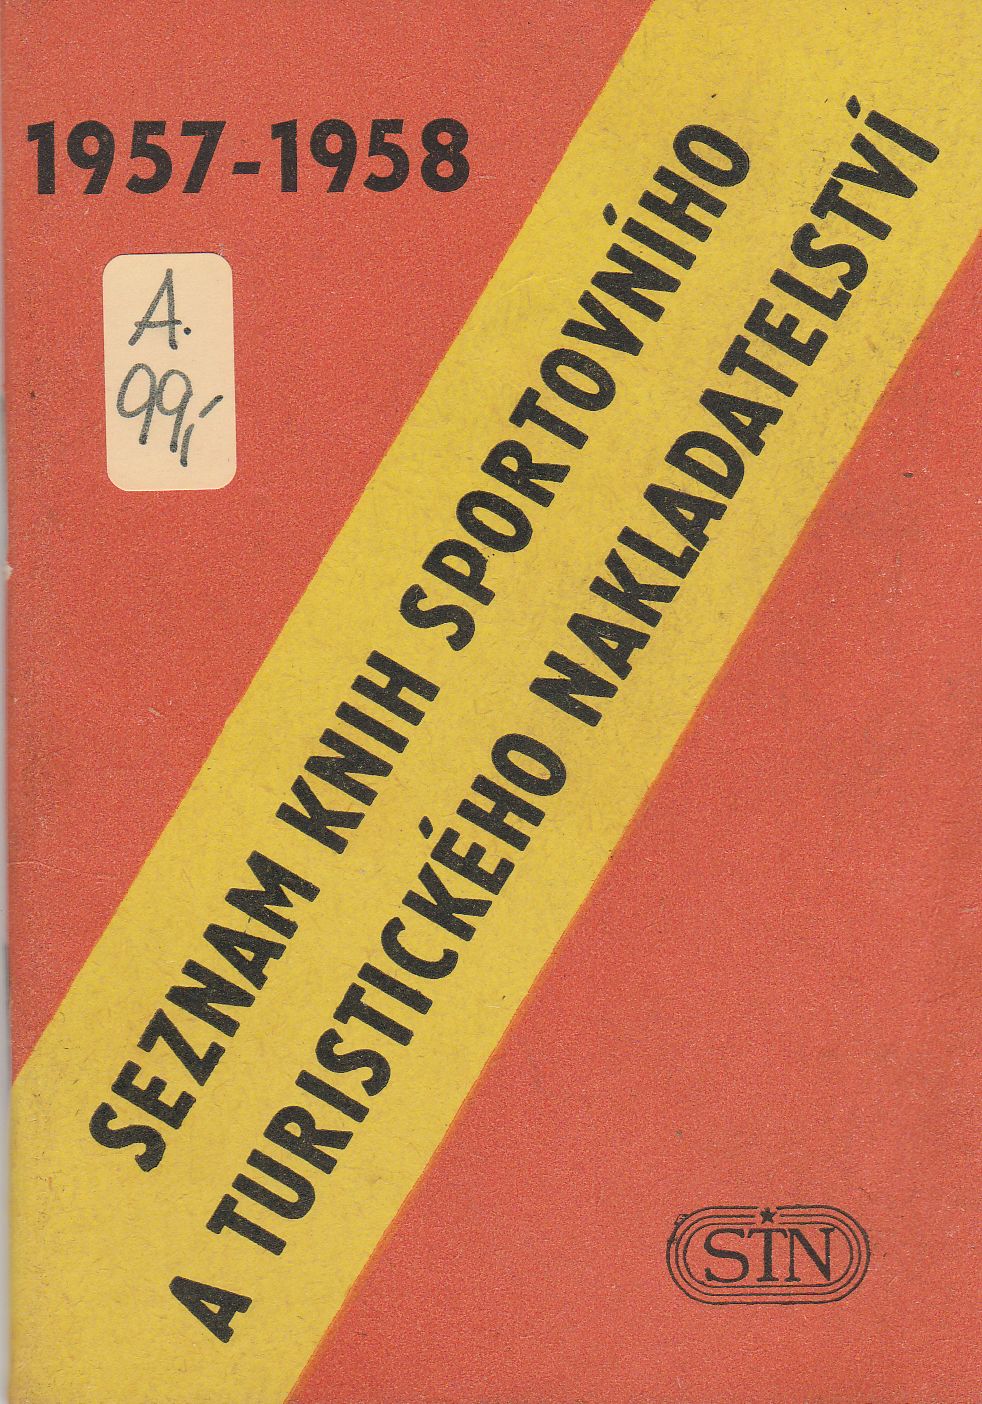 Seznam knih sportovního a turistického nakladatelství 1957-1958